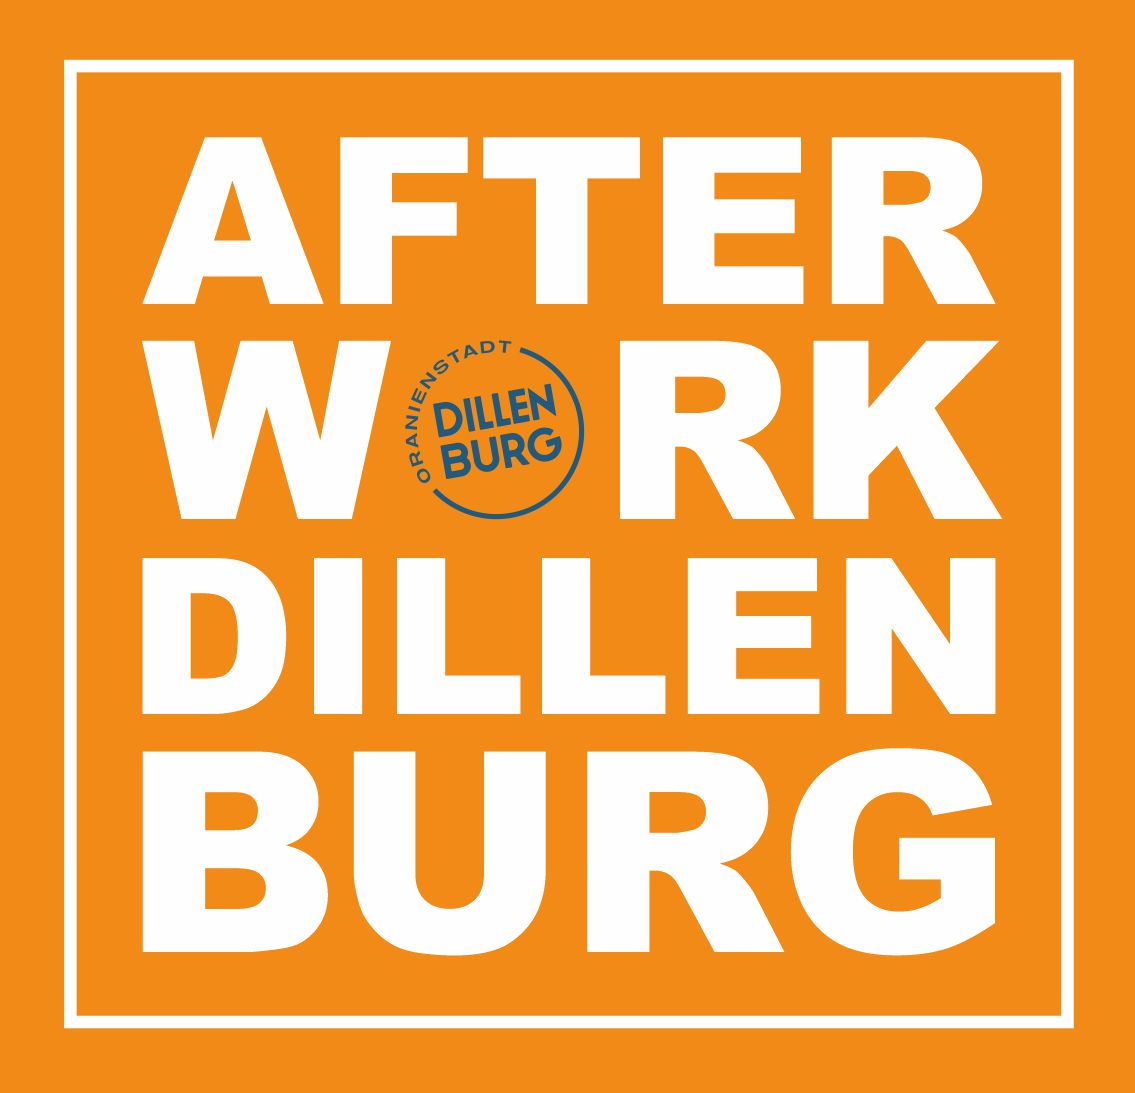 In weißer Schrift auf orangenem Hintergrund die Worte "Afterwork Dillenburg" Das Bild dient als Navigationselement und führt zum Artikel "Afterwork Dillenburg"